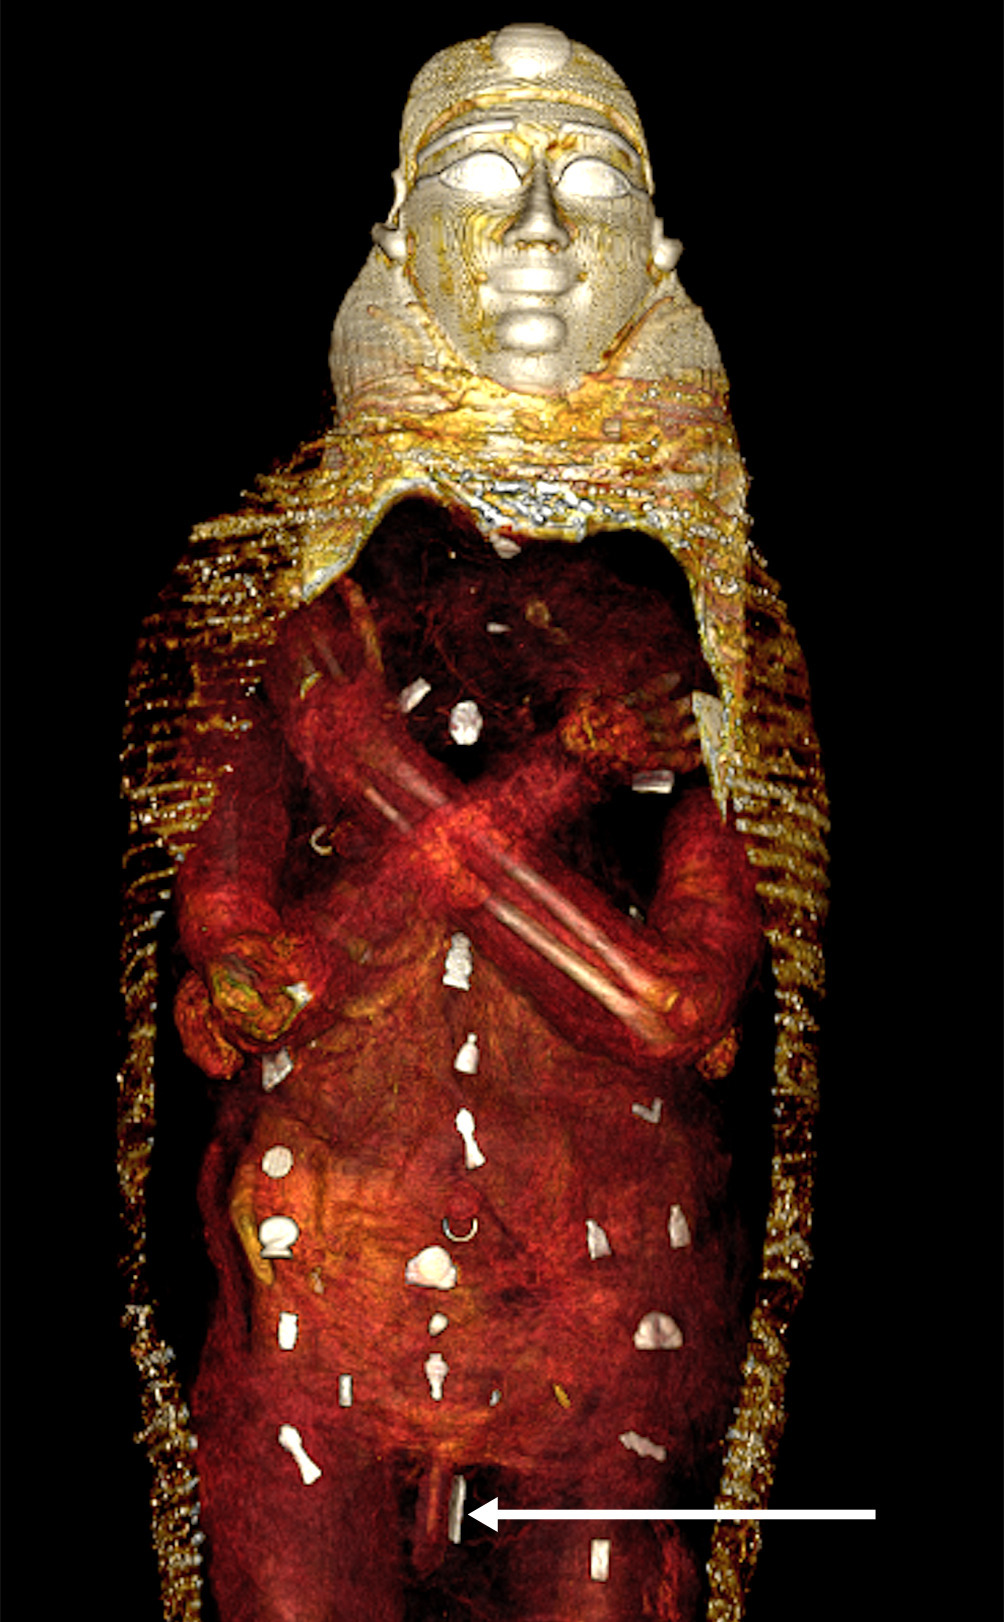 Vista de los amuletos distribuidos por el cuerpo en tres columnas